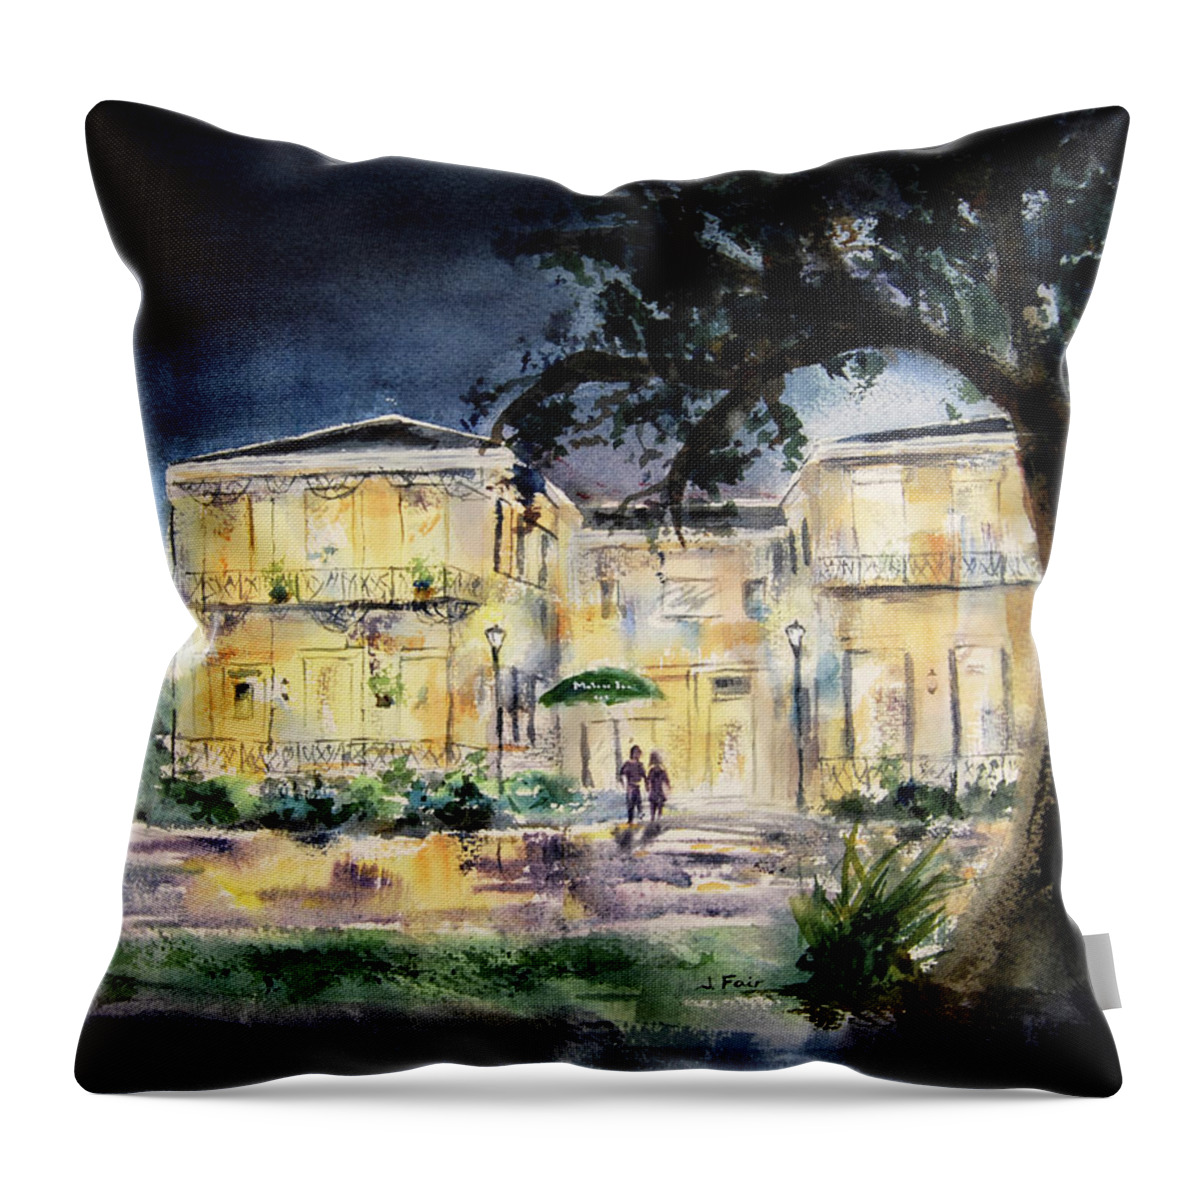 Malaga Inn Throw Pillow featuring the painting Malaga Inn by Jerry Fair